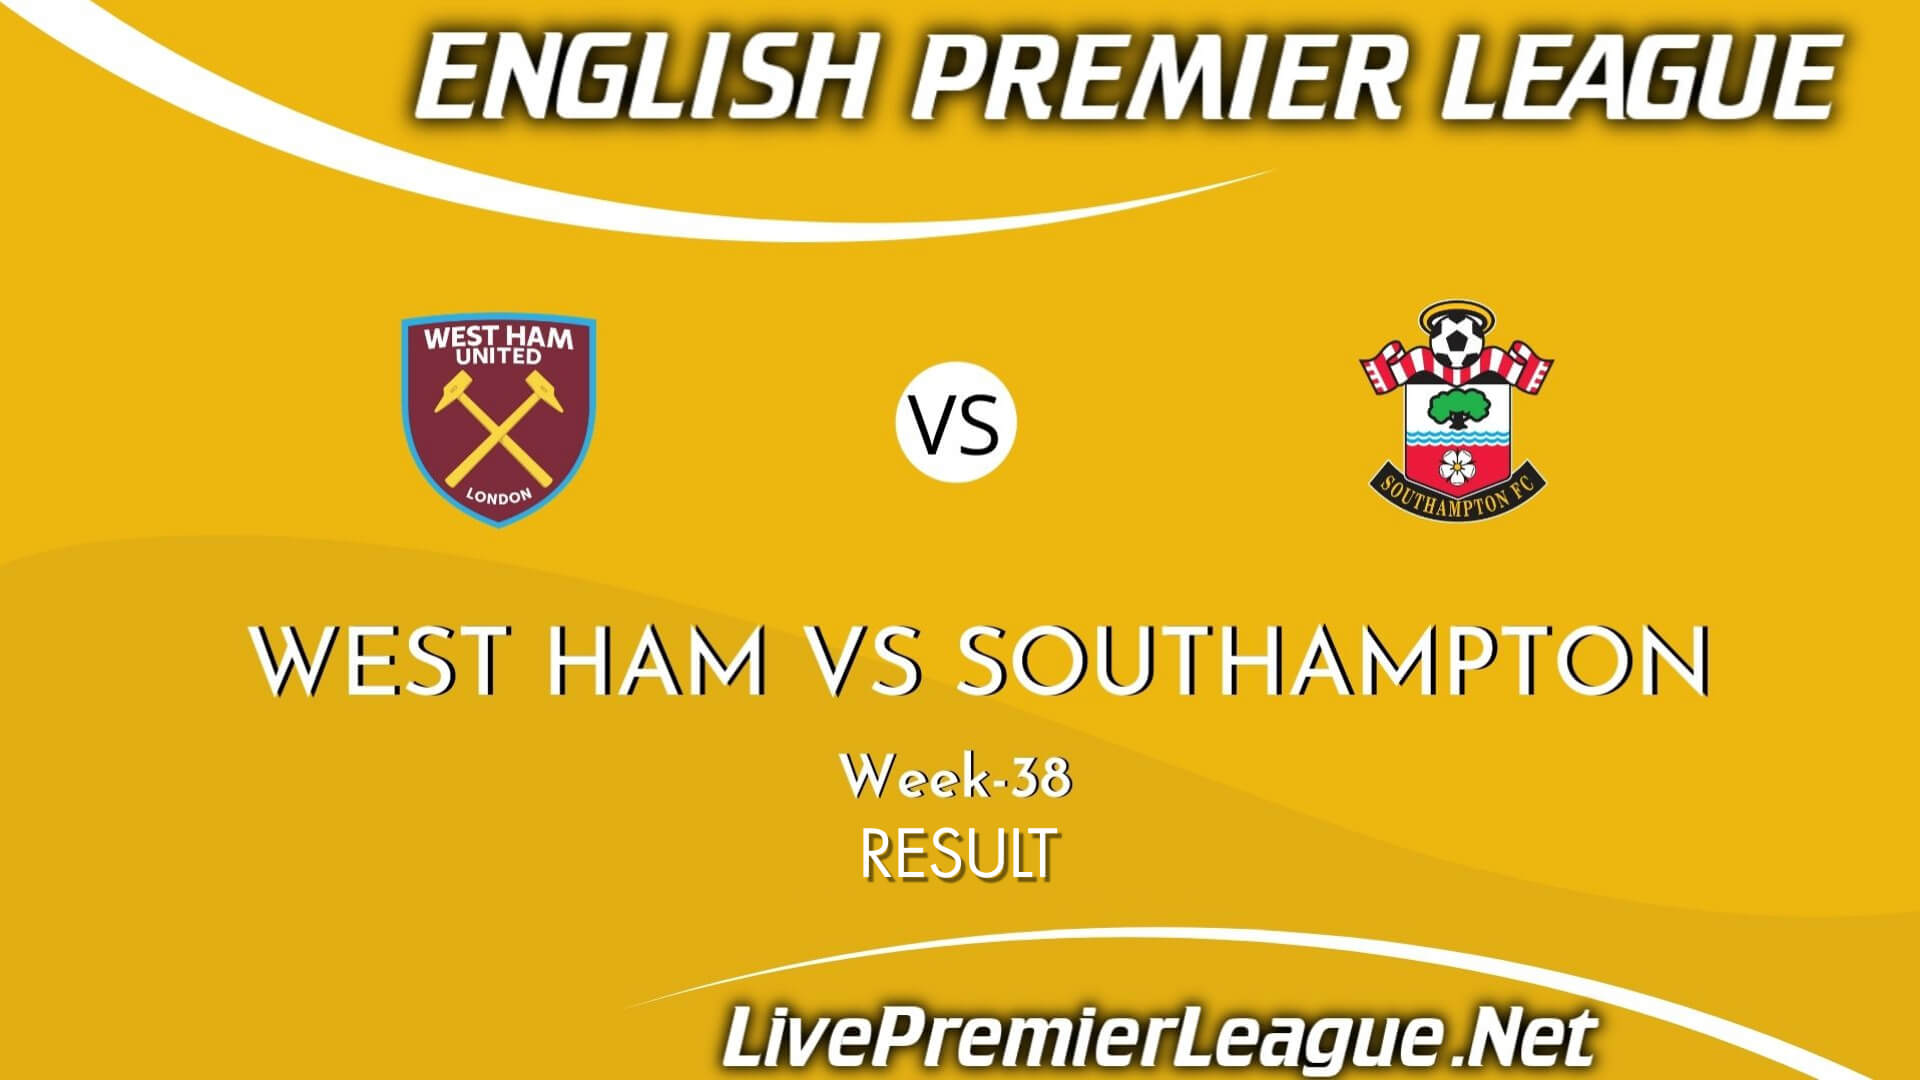 West Ham Vs Southampton Result 2021 | EPL Week 38